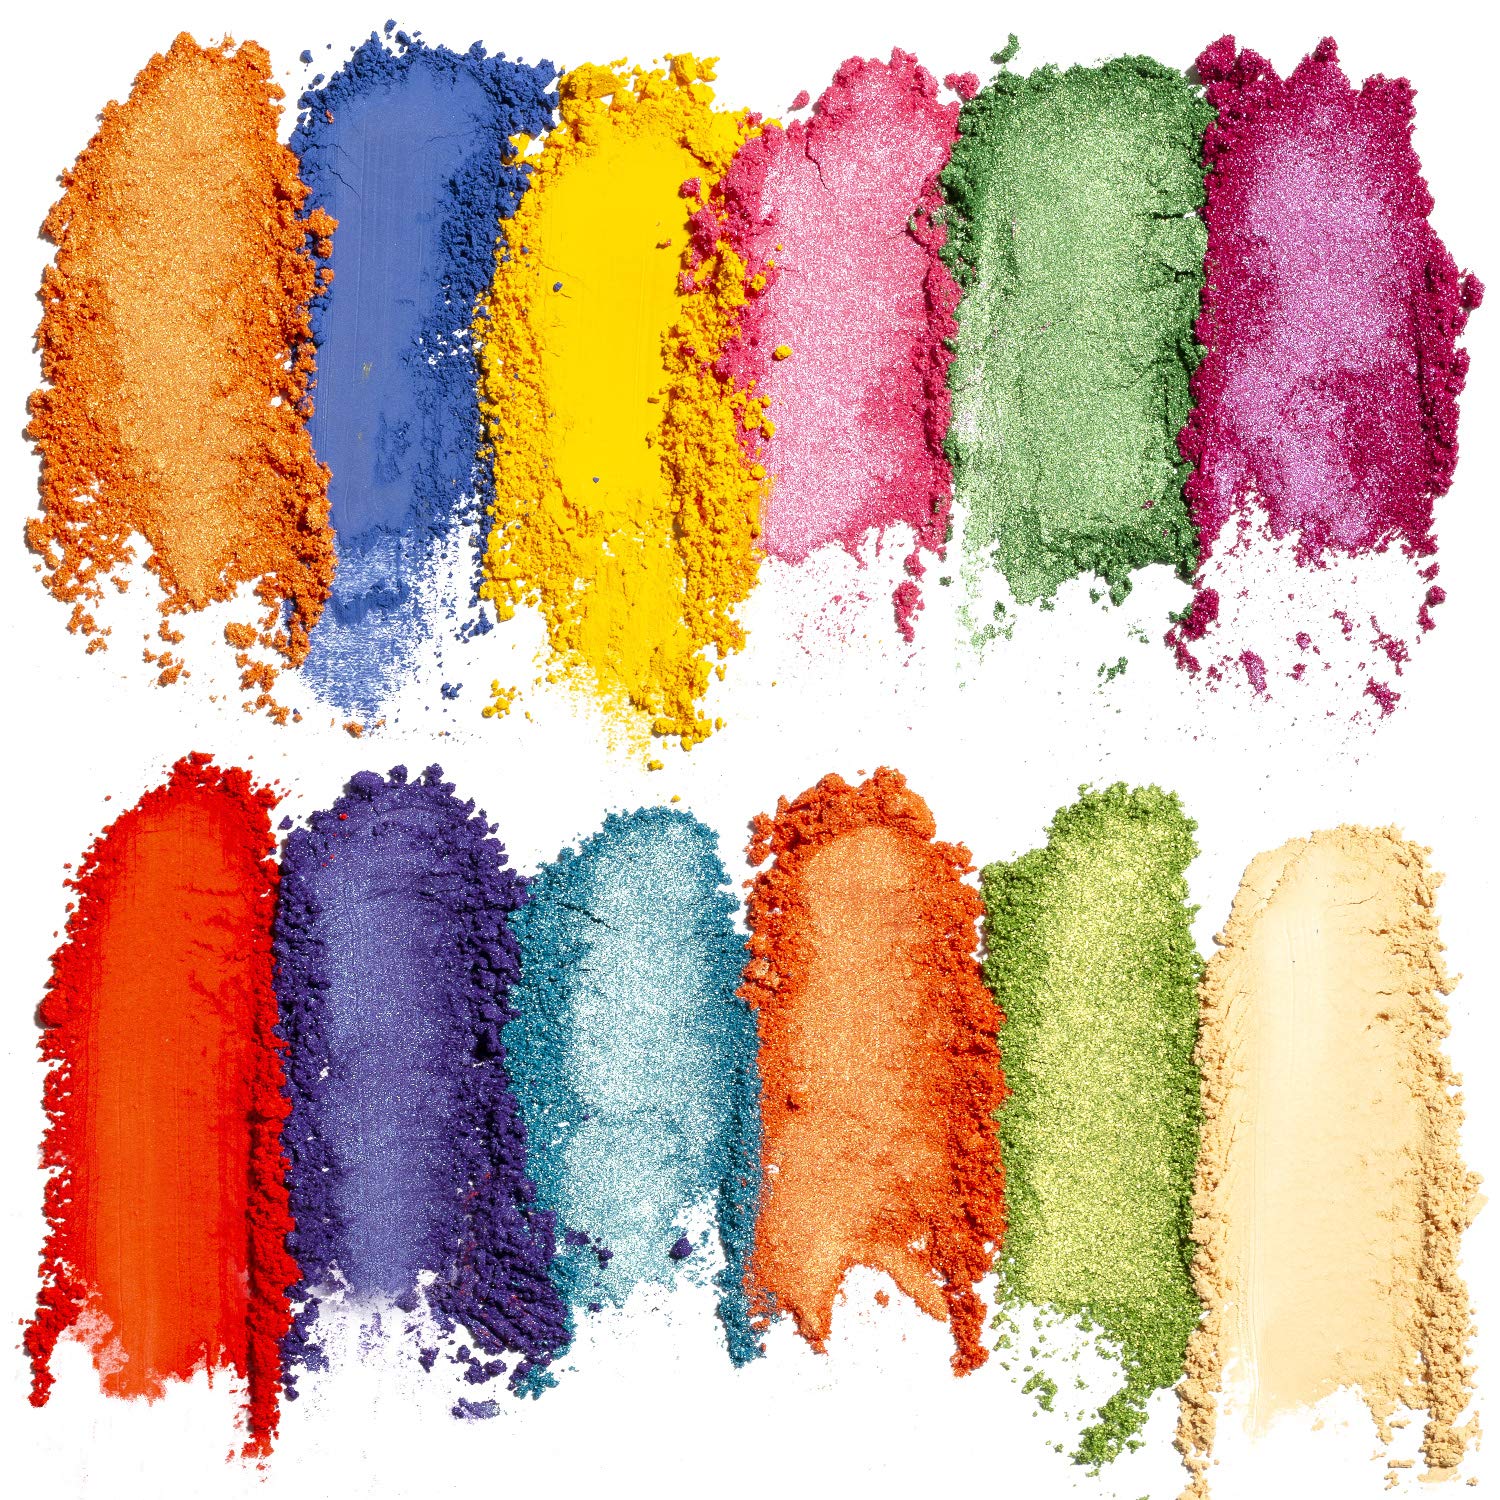  EYESEEK 64 Colors Eyeshadow Palette Professional High Pigmented Makeup Pallet Colorful Rainbow Color Makeup Eyeshadow Palette Matte Shimmer Glitter Eye Shadow Pallet